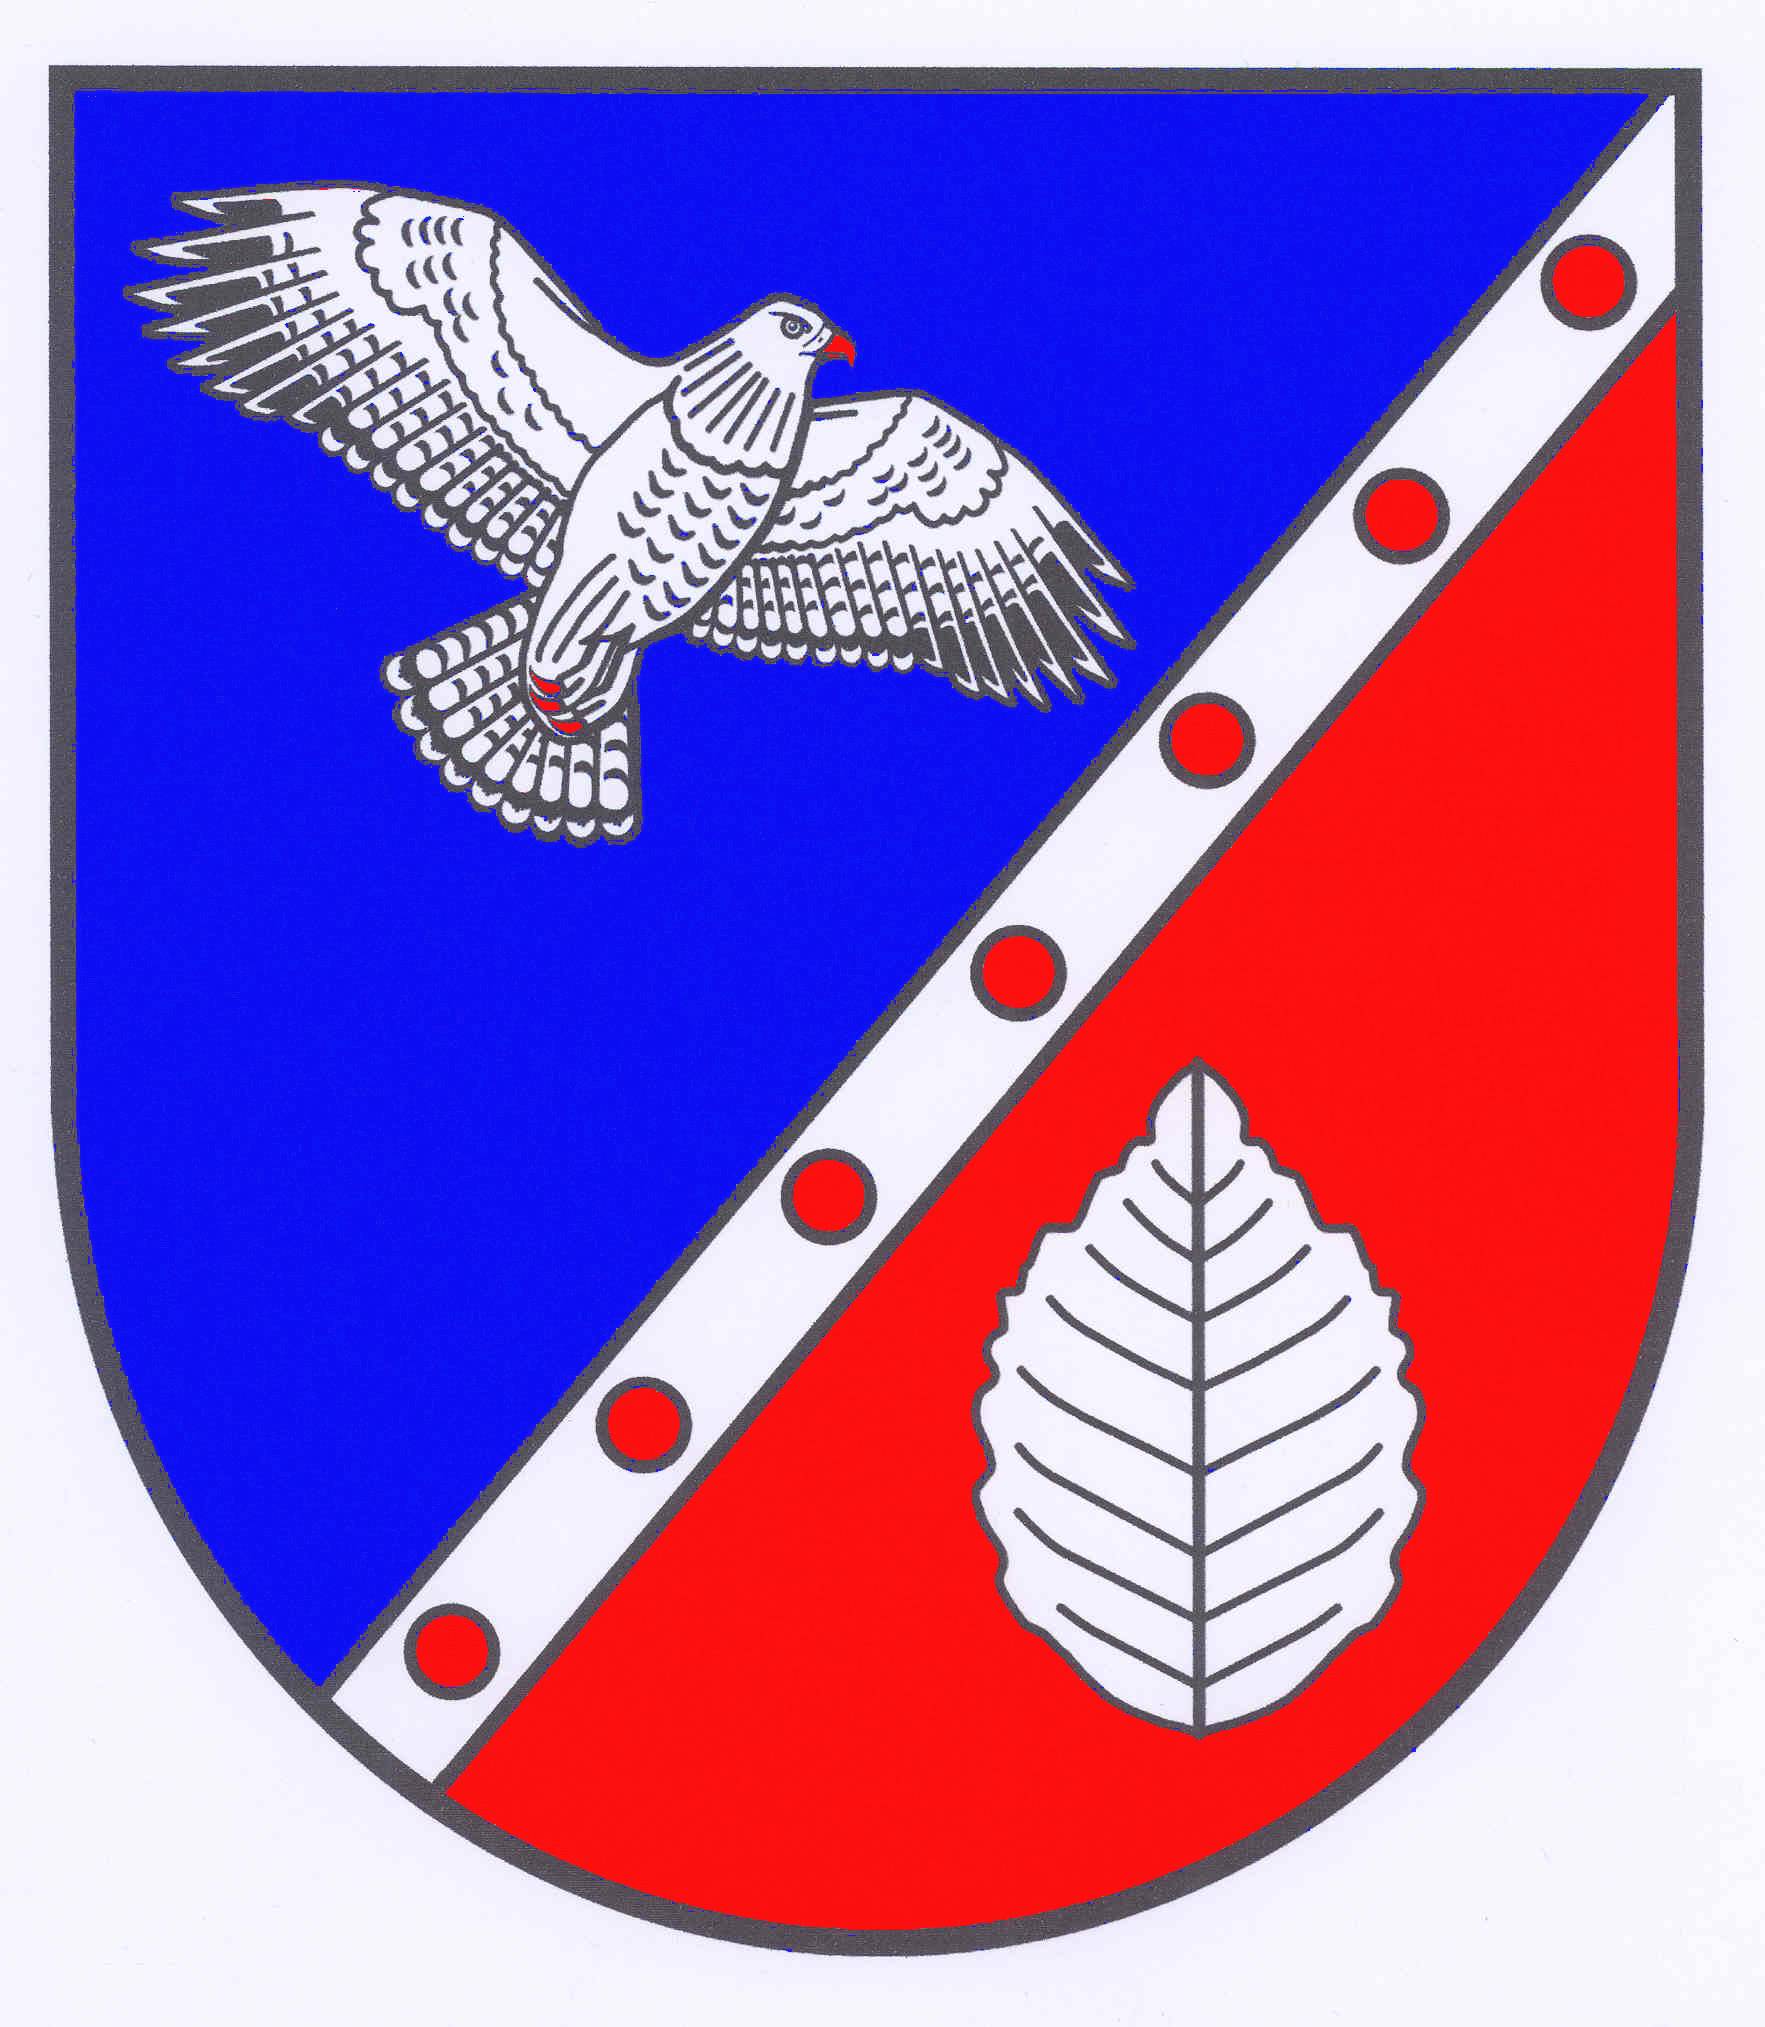 Wappen Amt Böklund, Kreis Schleswig-Flensburg